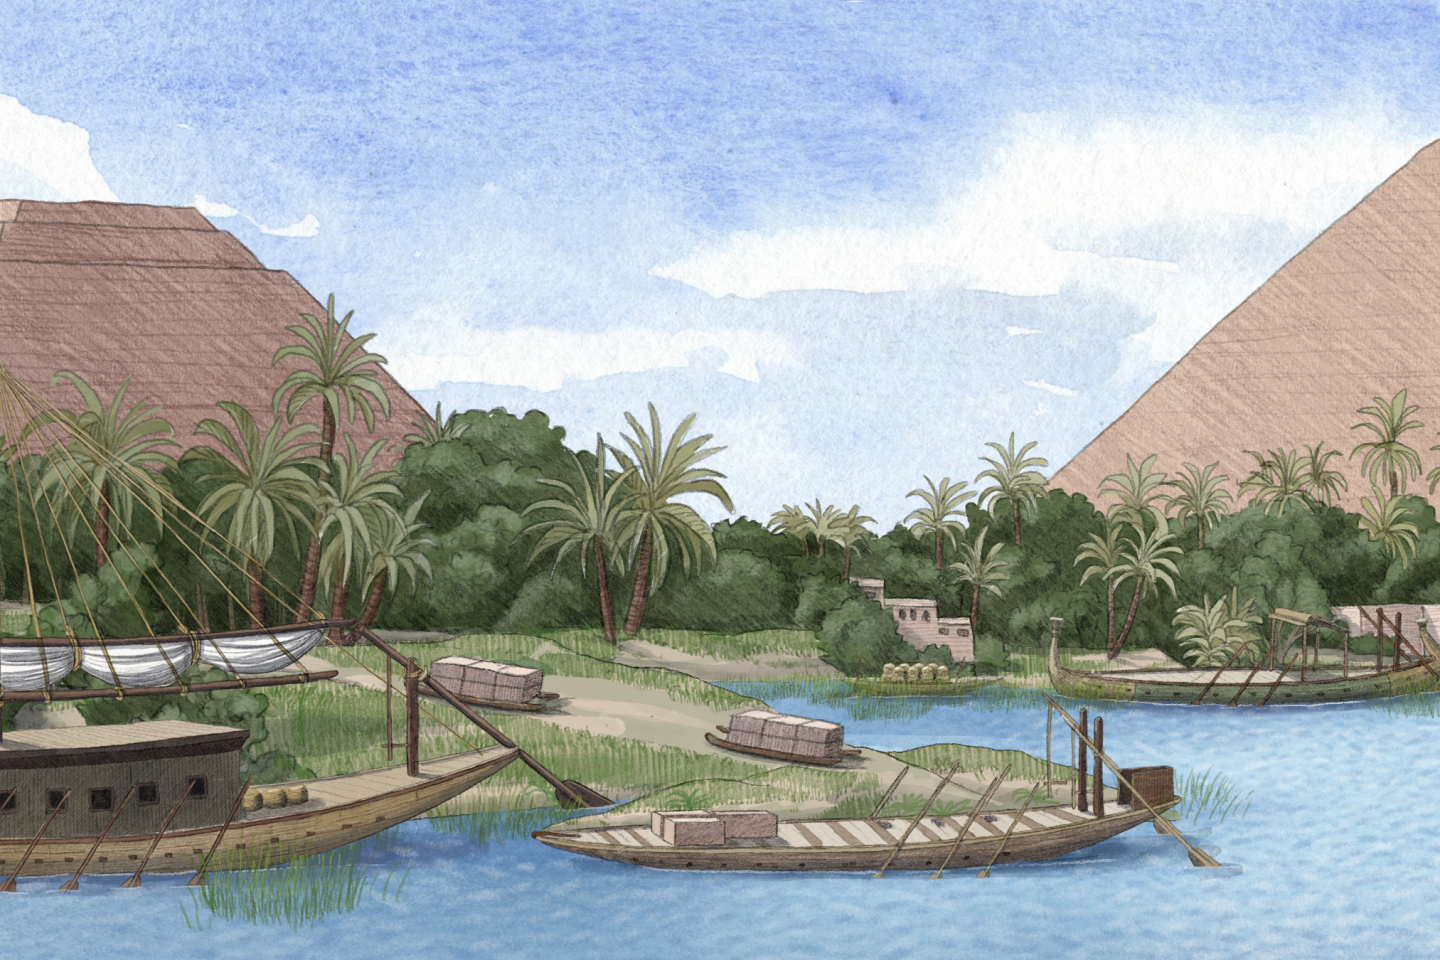 De arm van de Nijl is vandaag verdwenen in het hart van de piramidebouwplaats